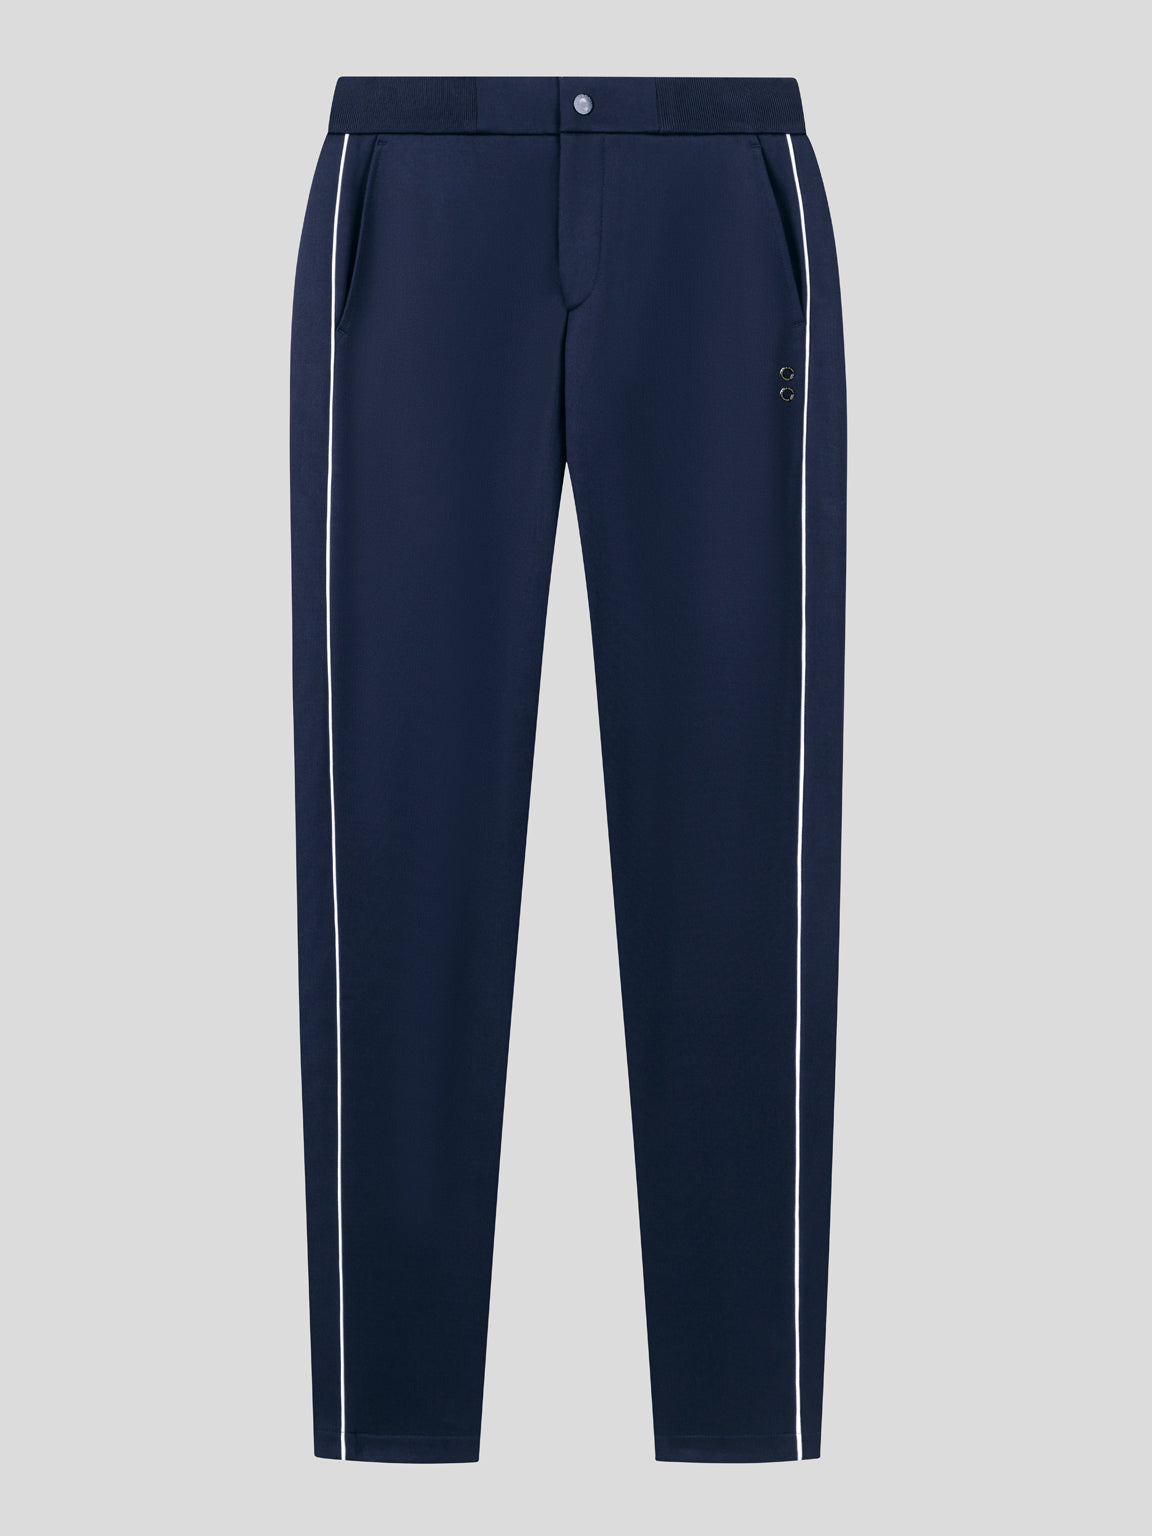 Pantalon zippé: Bleu marine